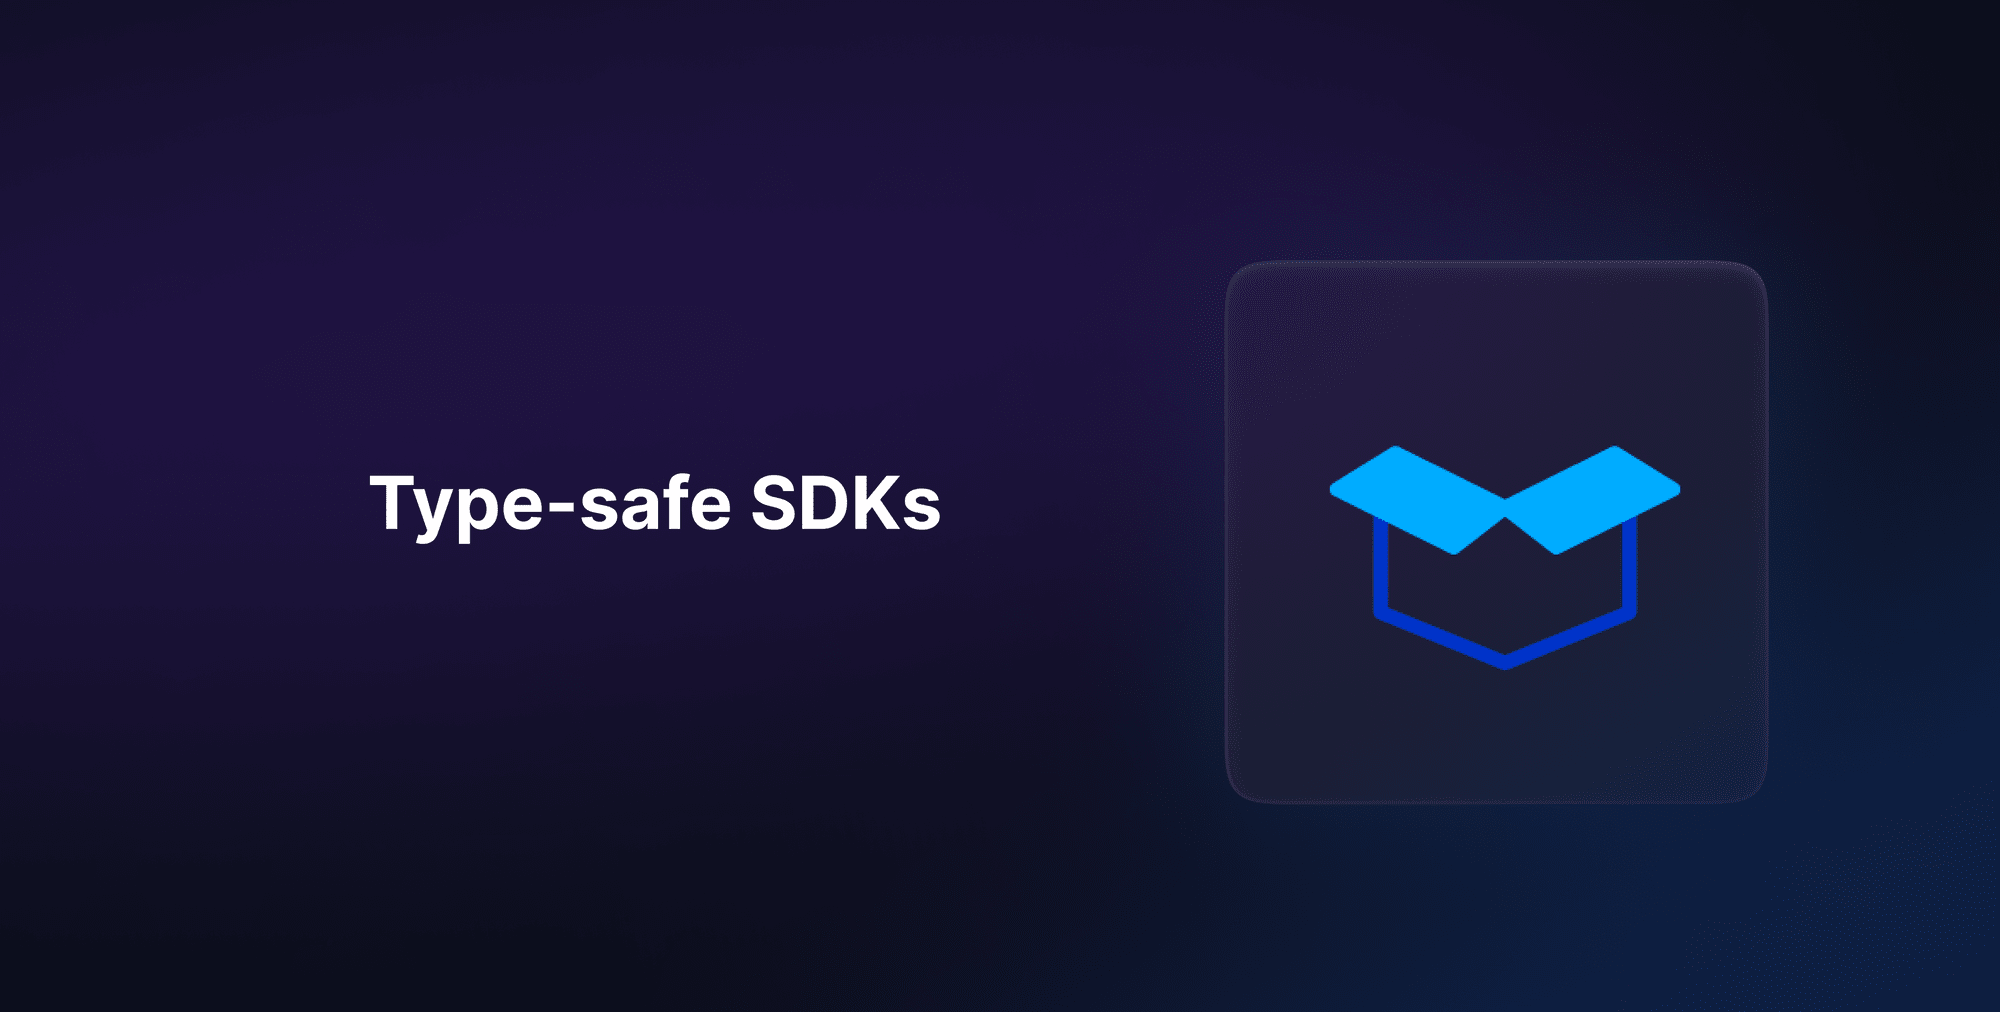 Type-safe SDKs for better developer experience